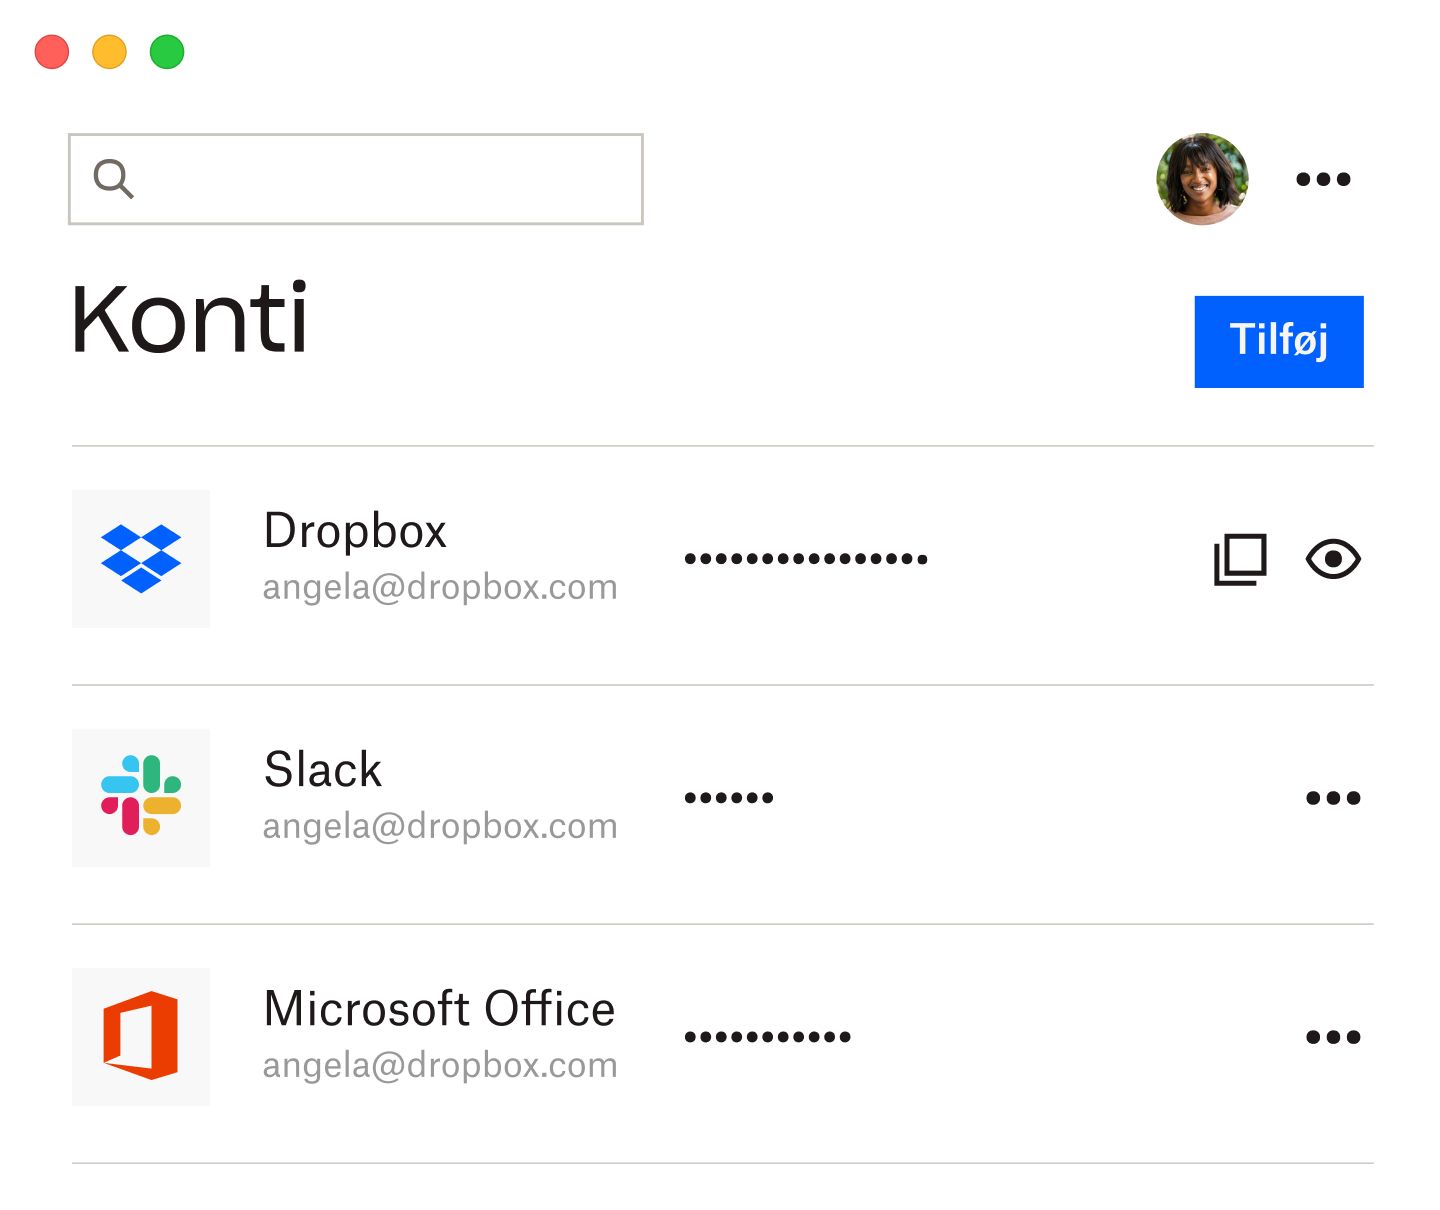 Dropbox-adgangskodeadministratoren med listen over gemte adgangskoder til Dropbox, Slack og Microsoft Office